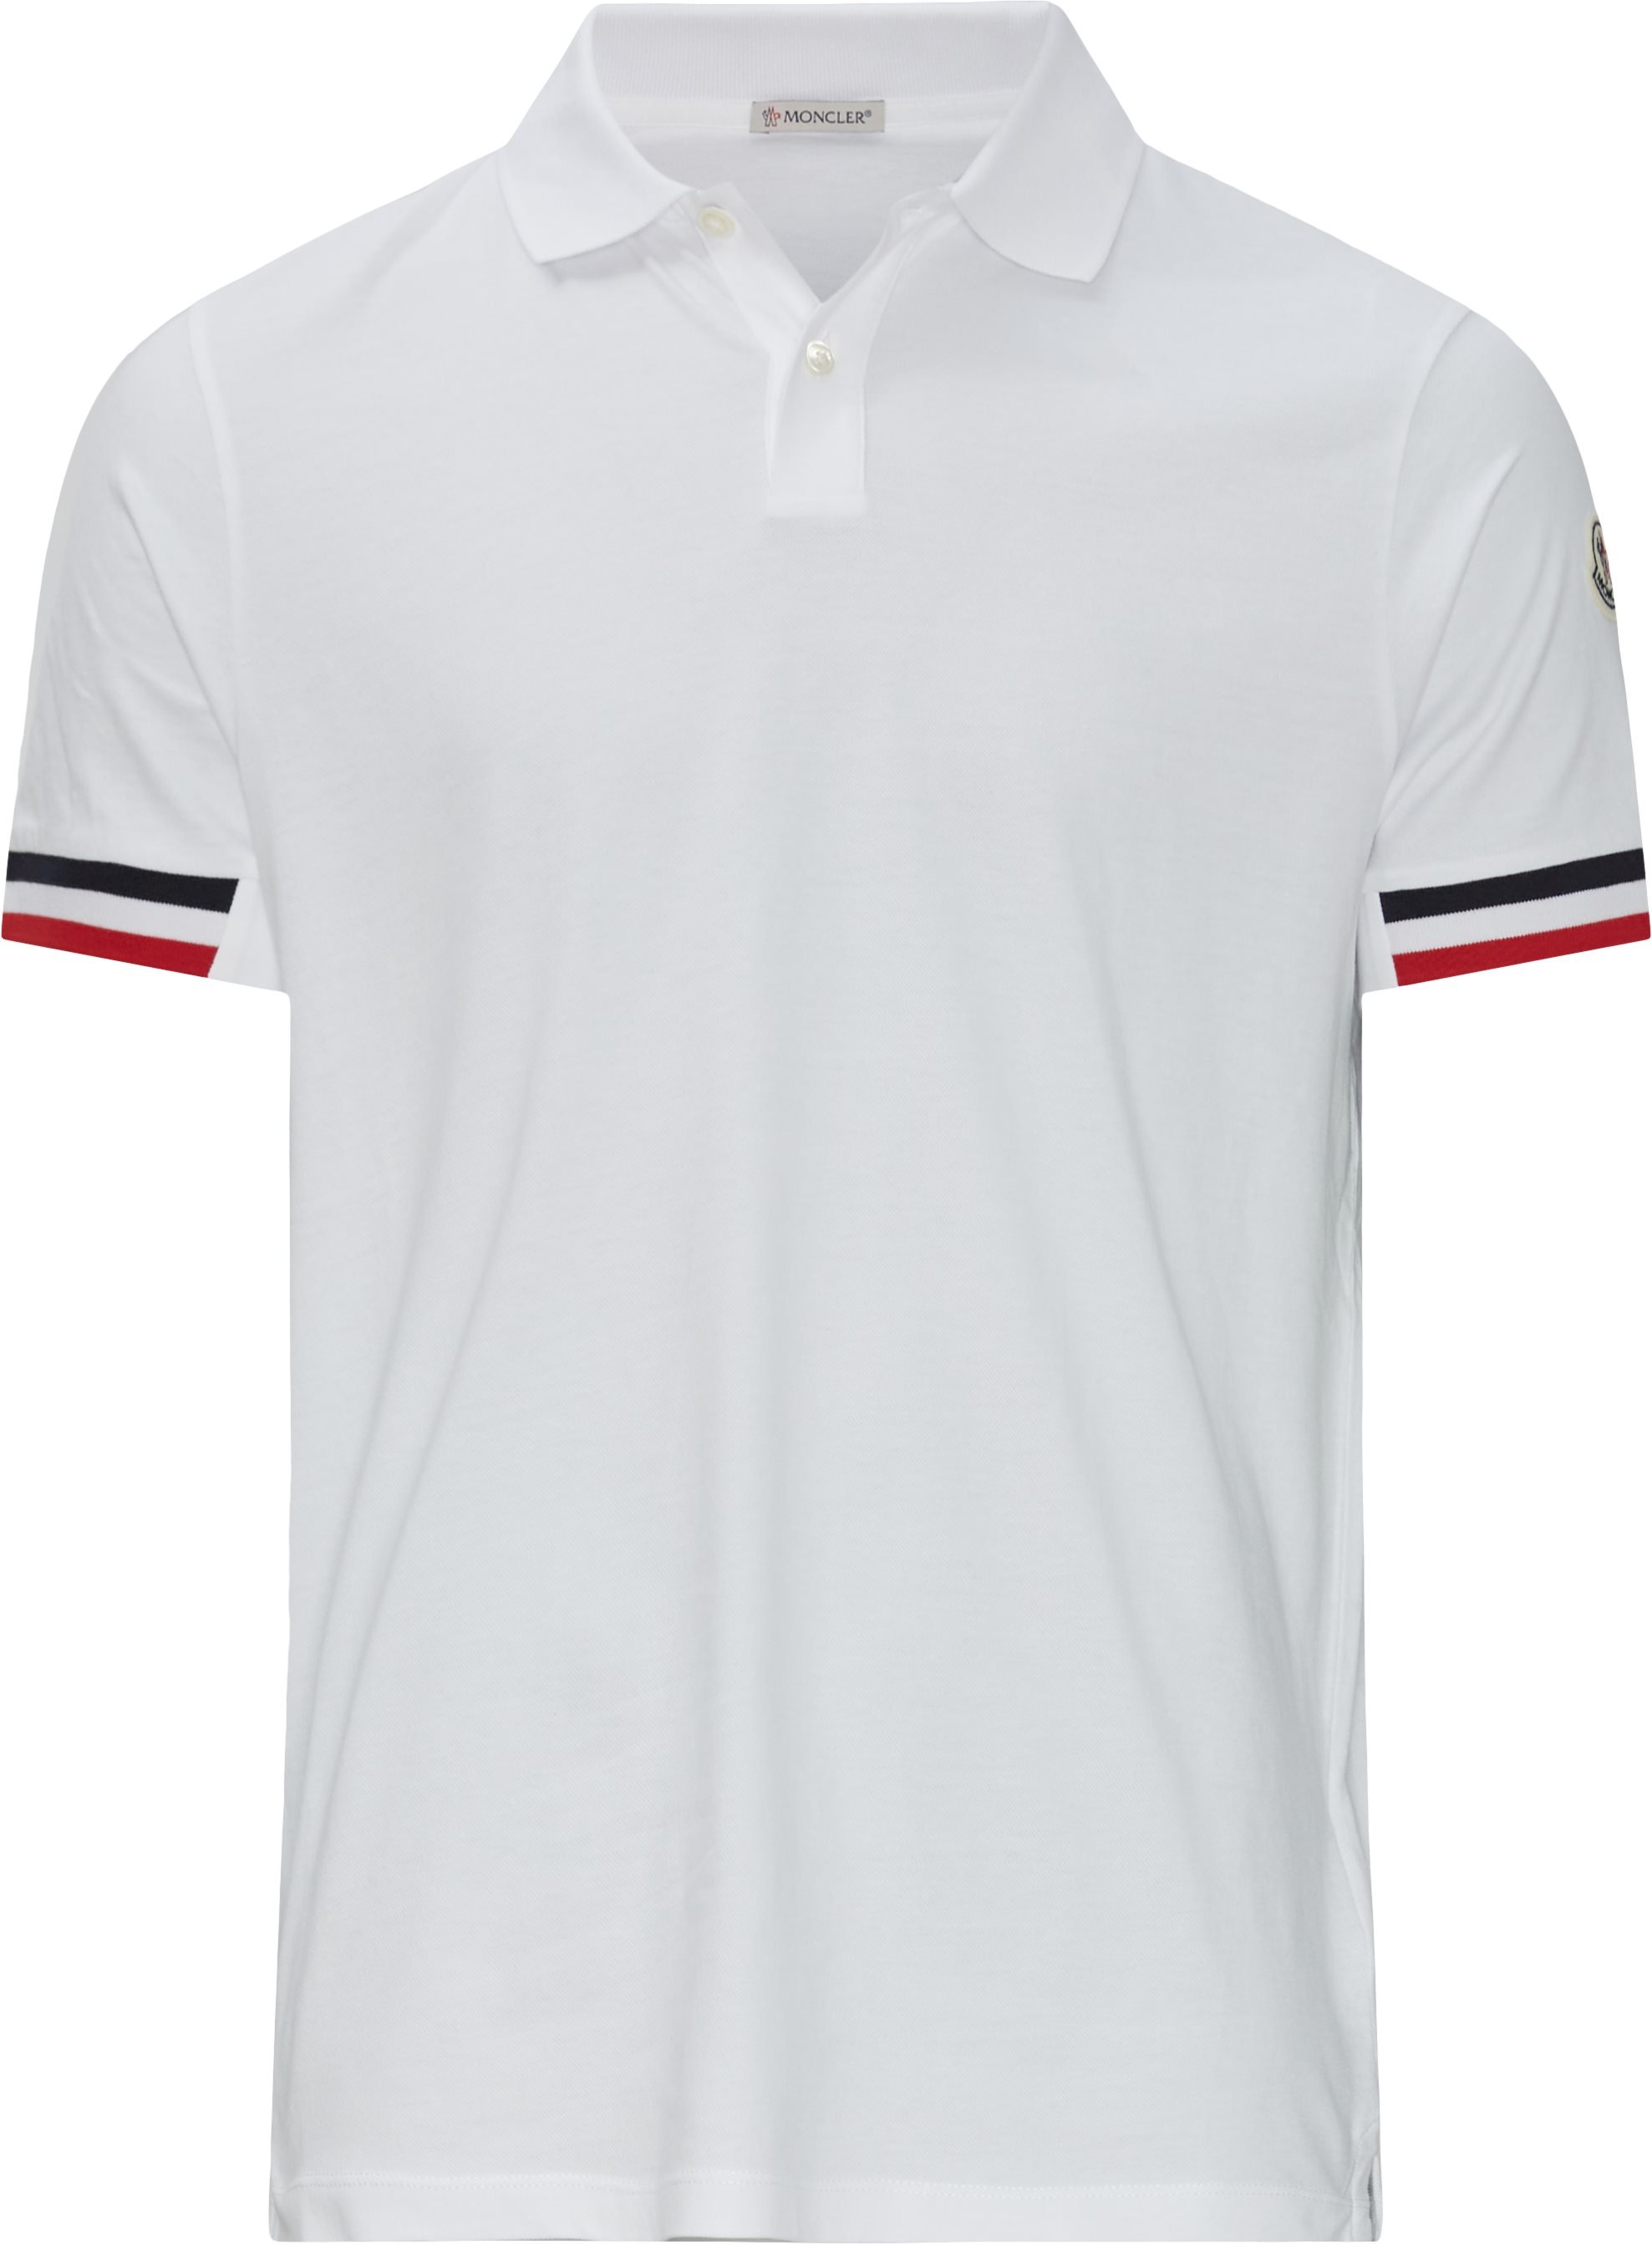 Moncler T-shirts 8A00023 899PO White